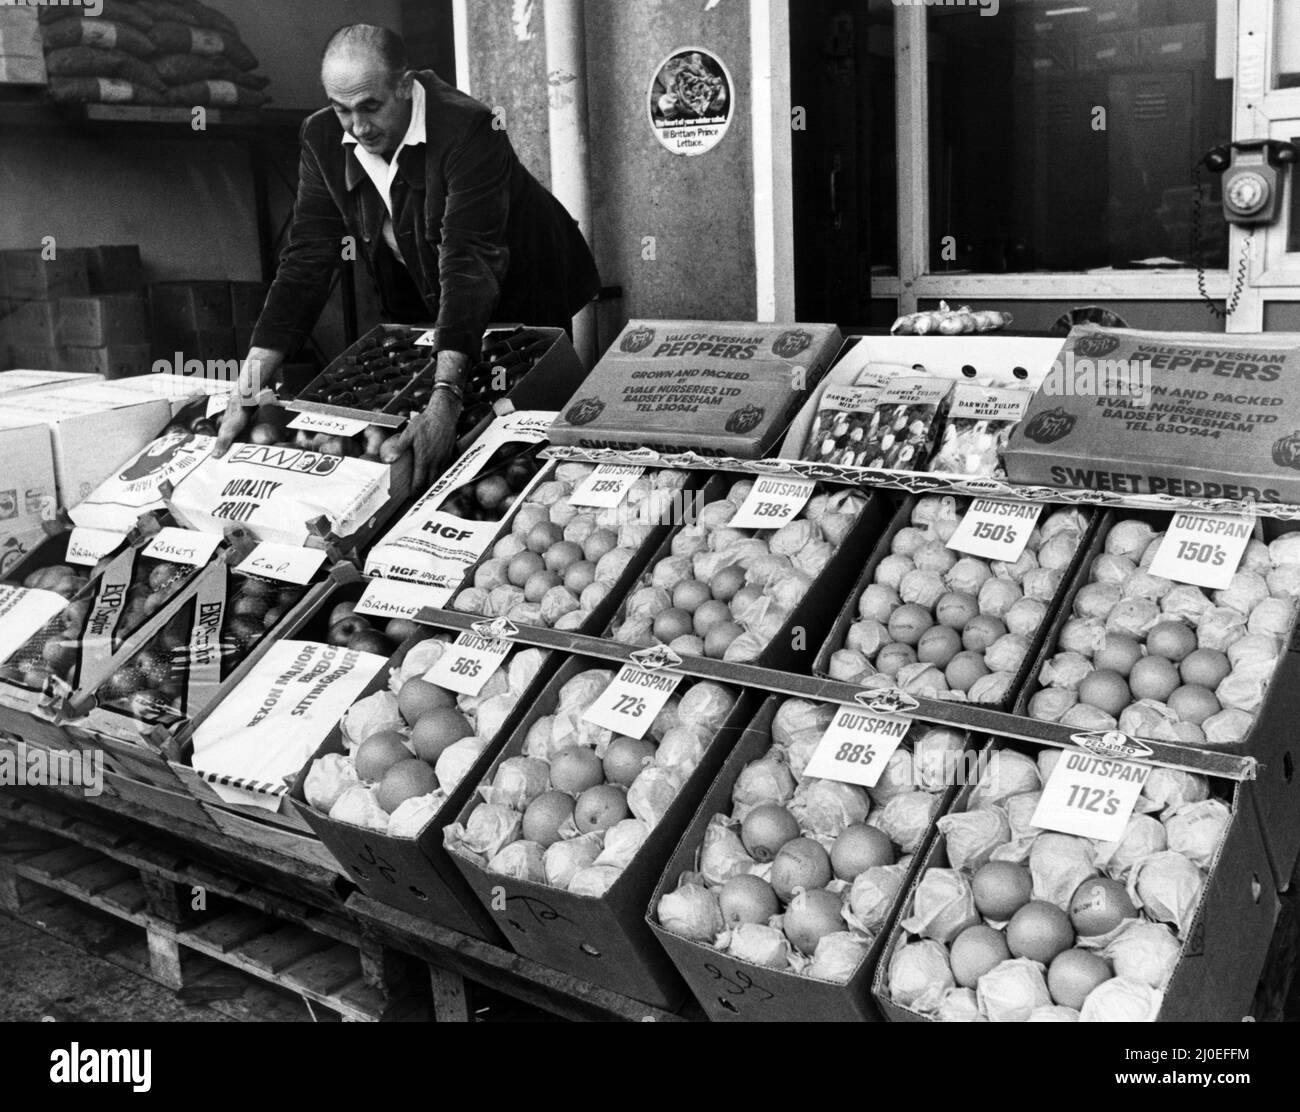 Mercato all'ingrosso della frutta, Liverpool, 27th settembre 1979. Una mostra di frutta di R Wells Ltd nel mercato all'ingrosso. Foto Stock